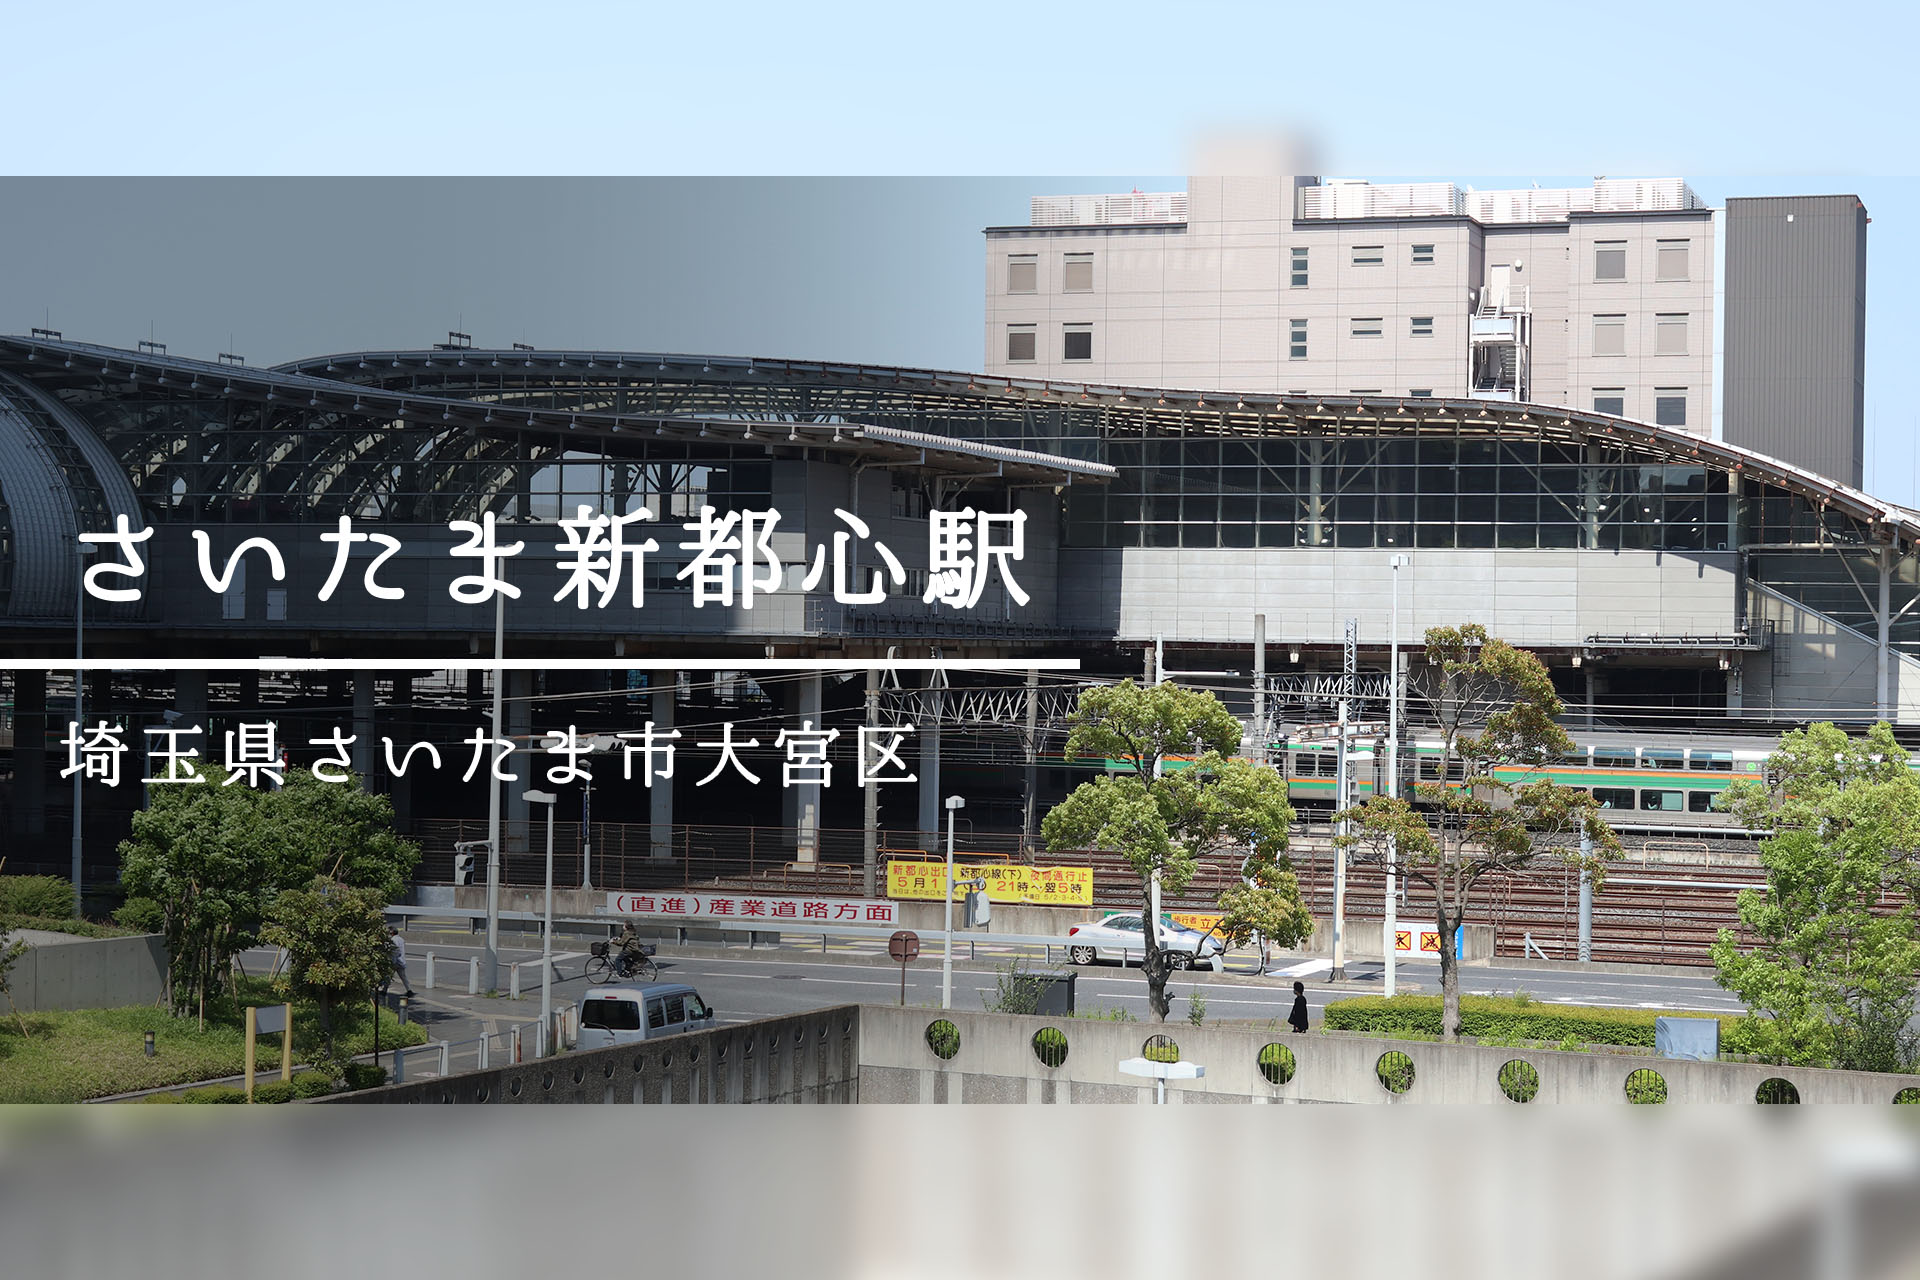 さいたま新都心駅周辺 ―大宮と浦和の間に現れた、未来を担う新しい街―